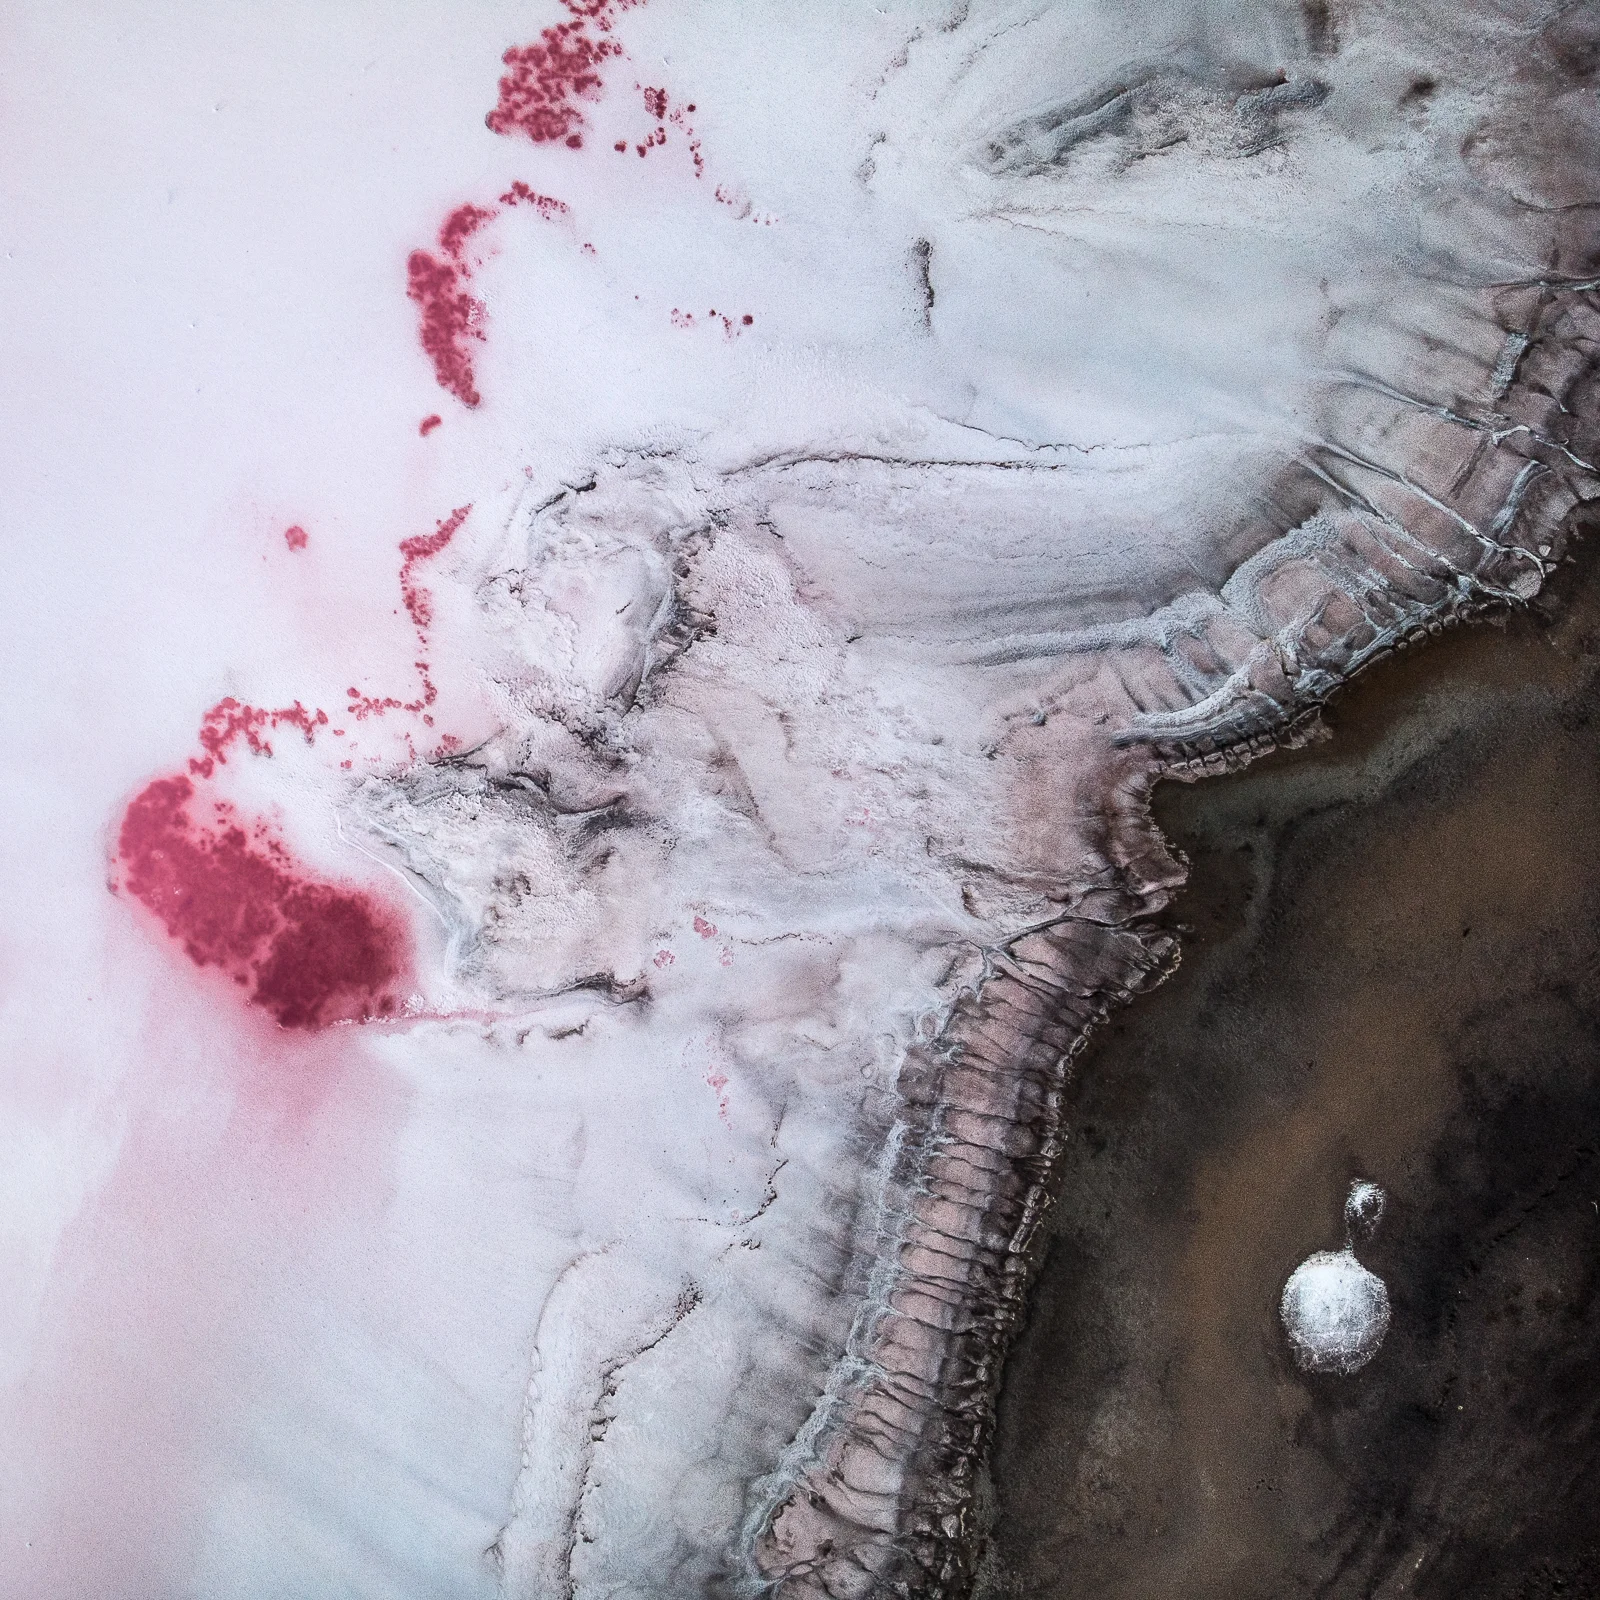 На Розовой планете: фото украинских озер номинированы на престижный конкурс мира - фото 468454